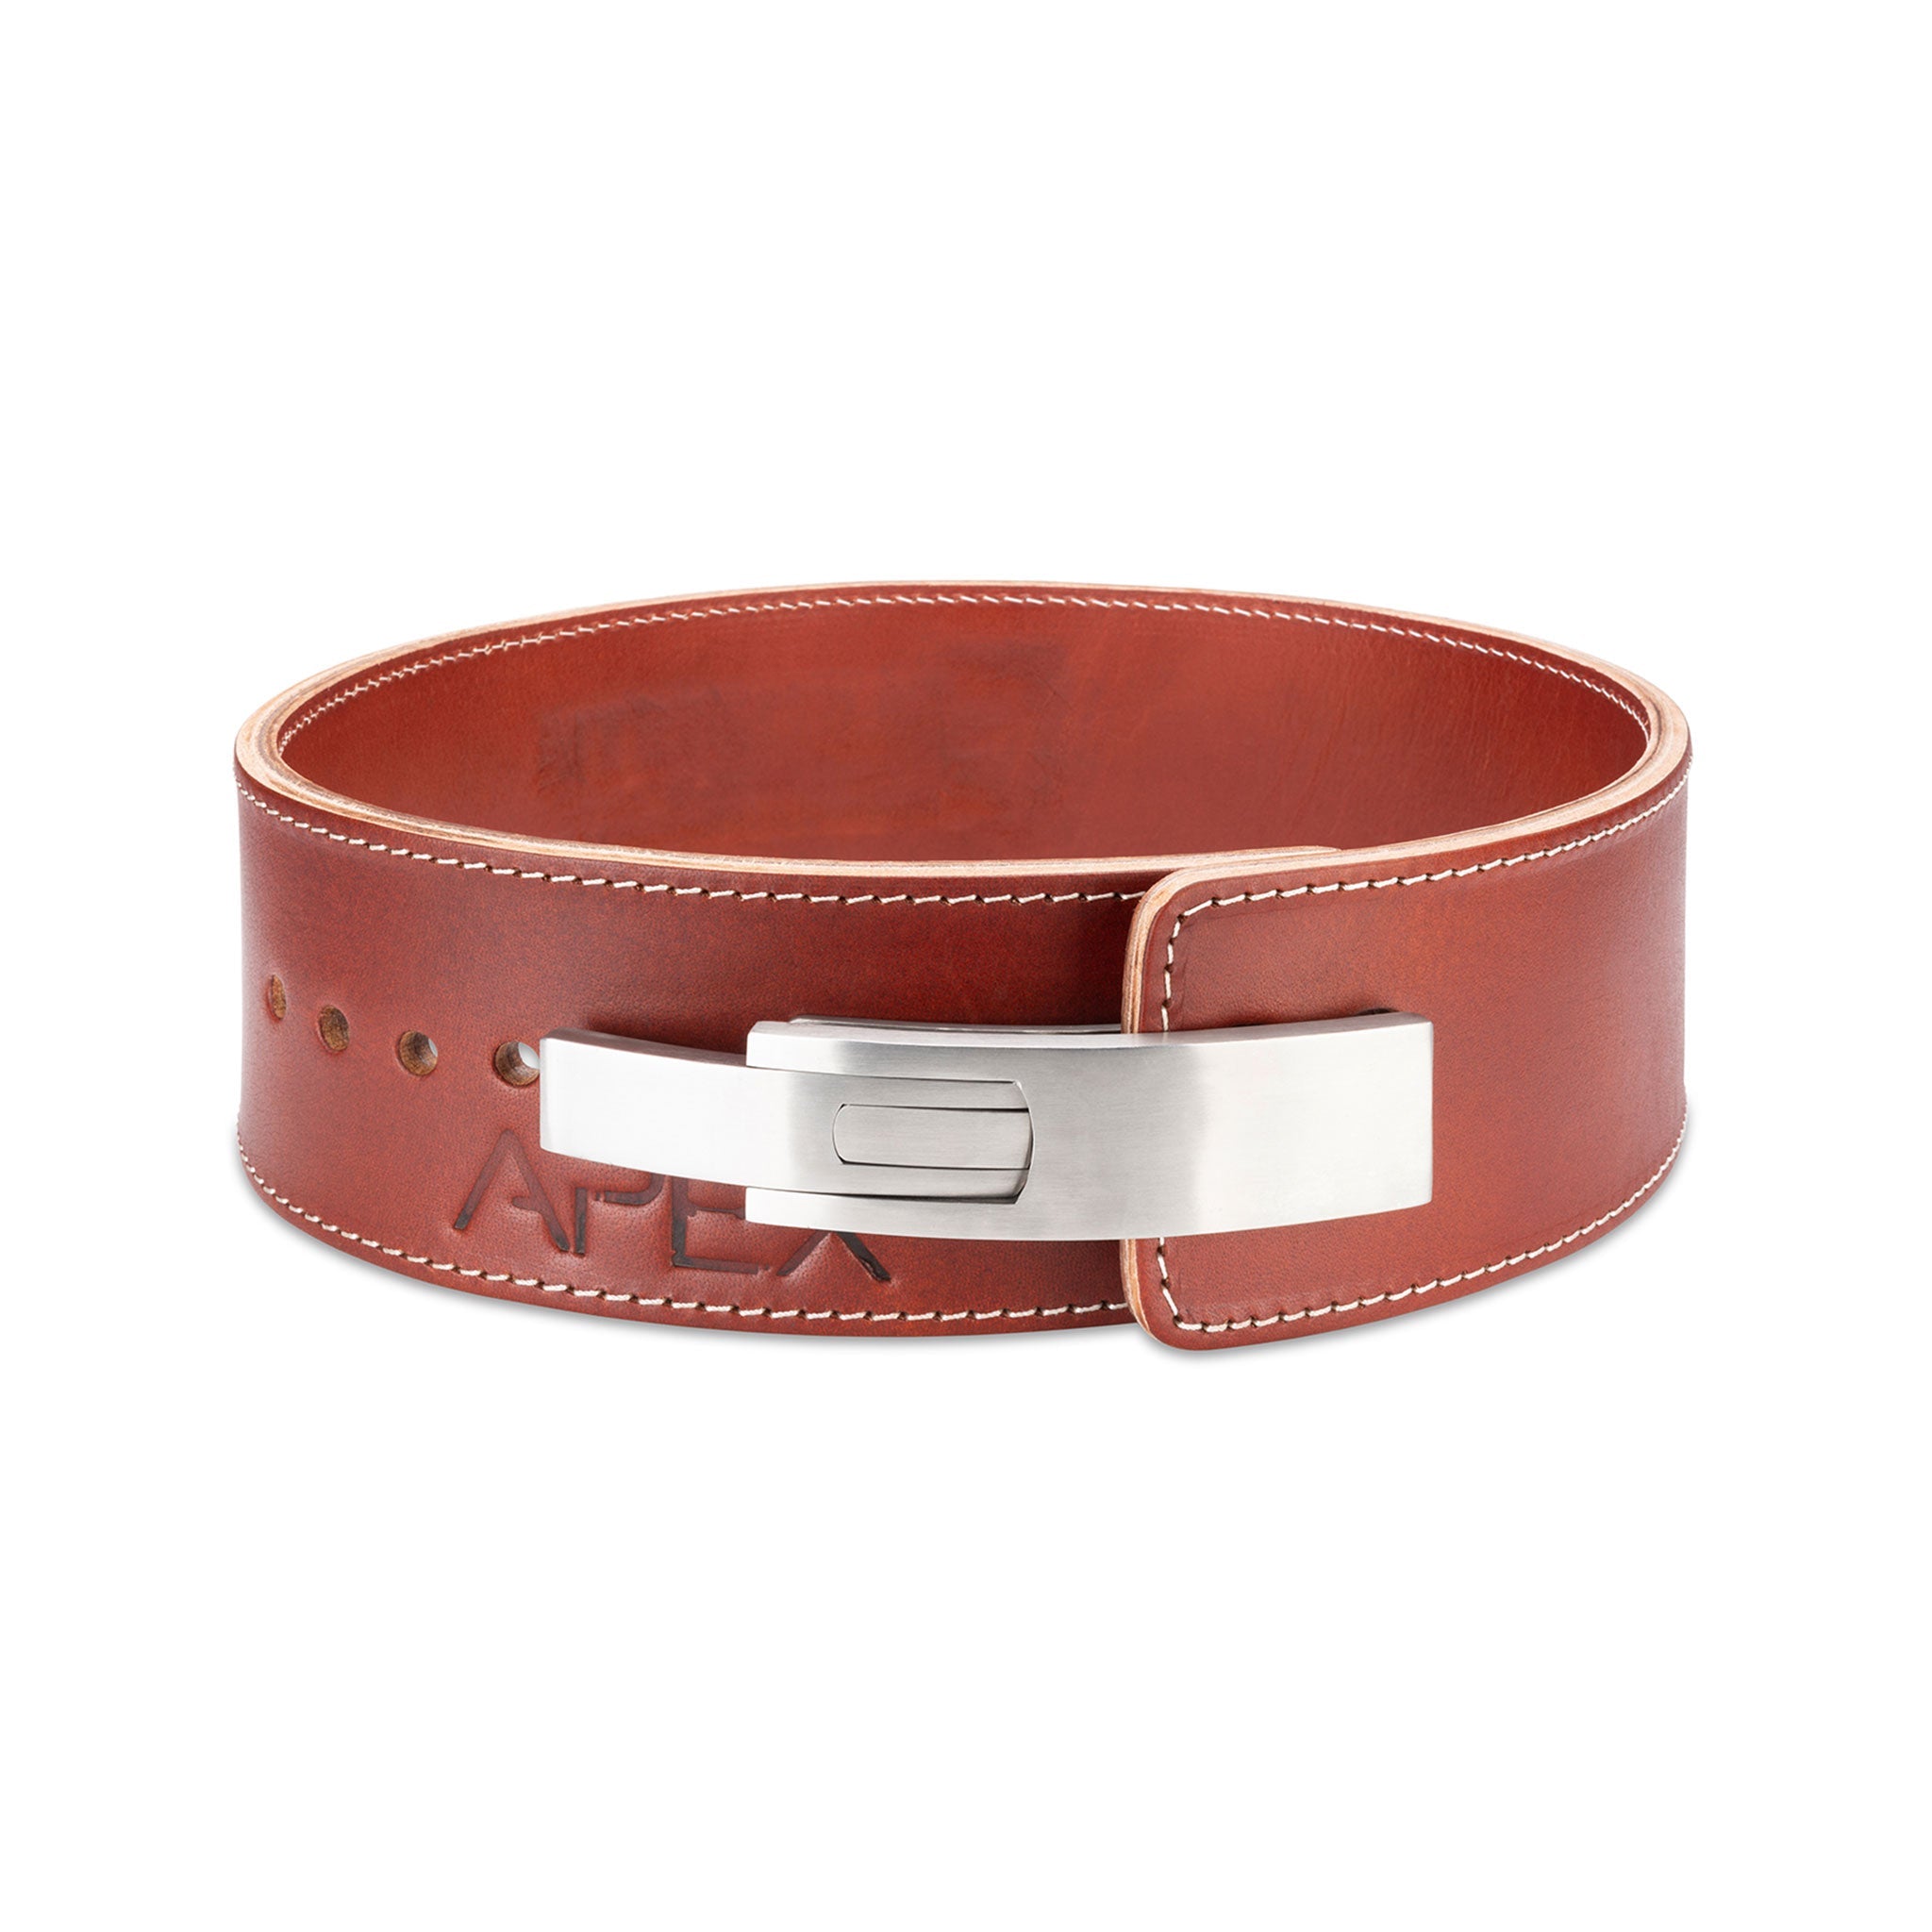 Shibusa Premium Leather Lever Belt